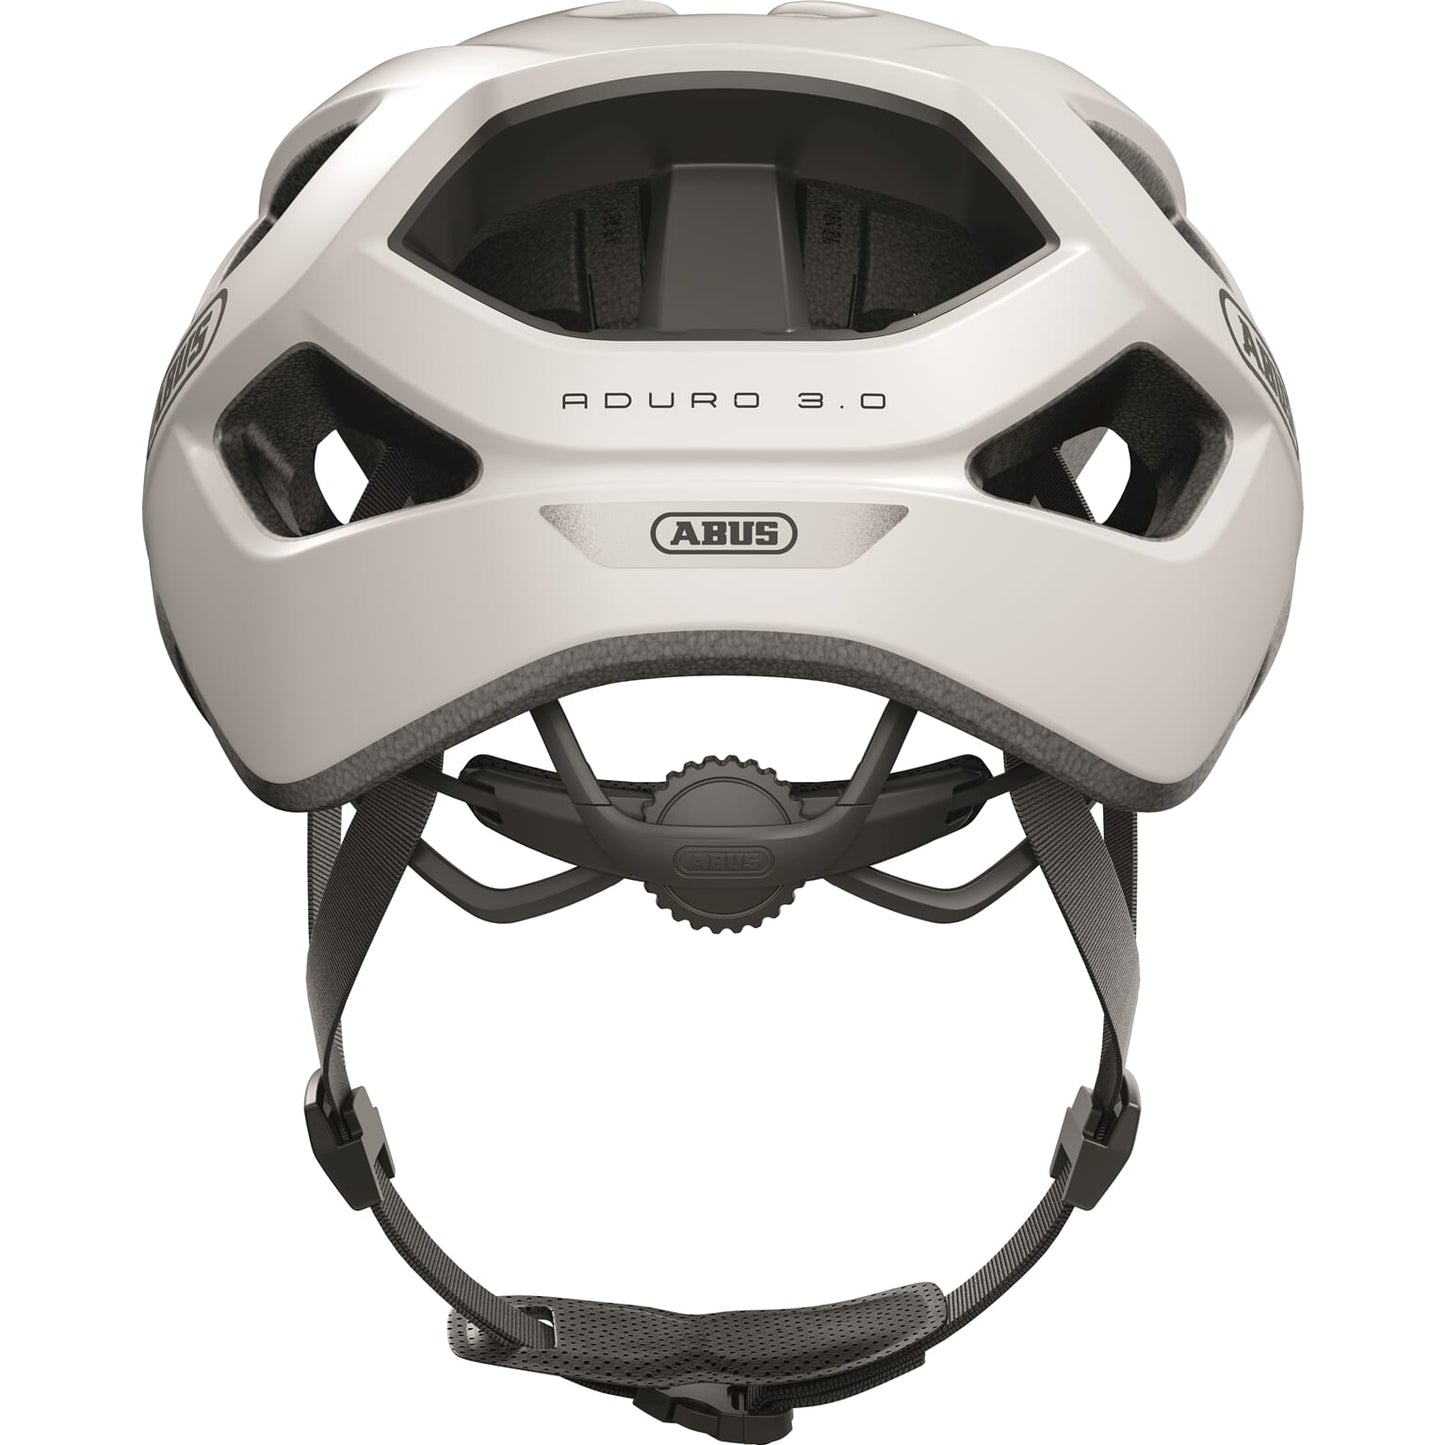 Aduro 3.0 fietshelm - sportief, chic, veilig - wit